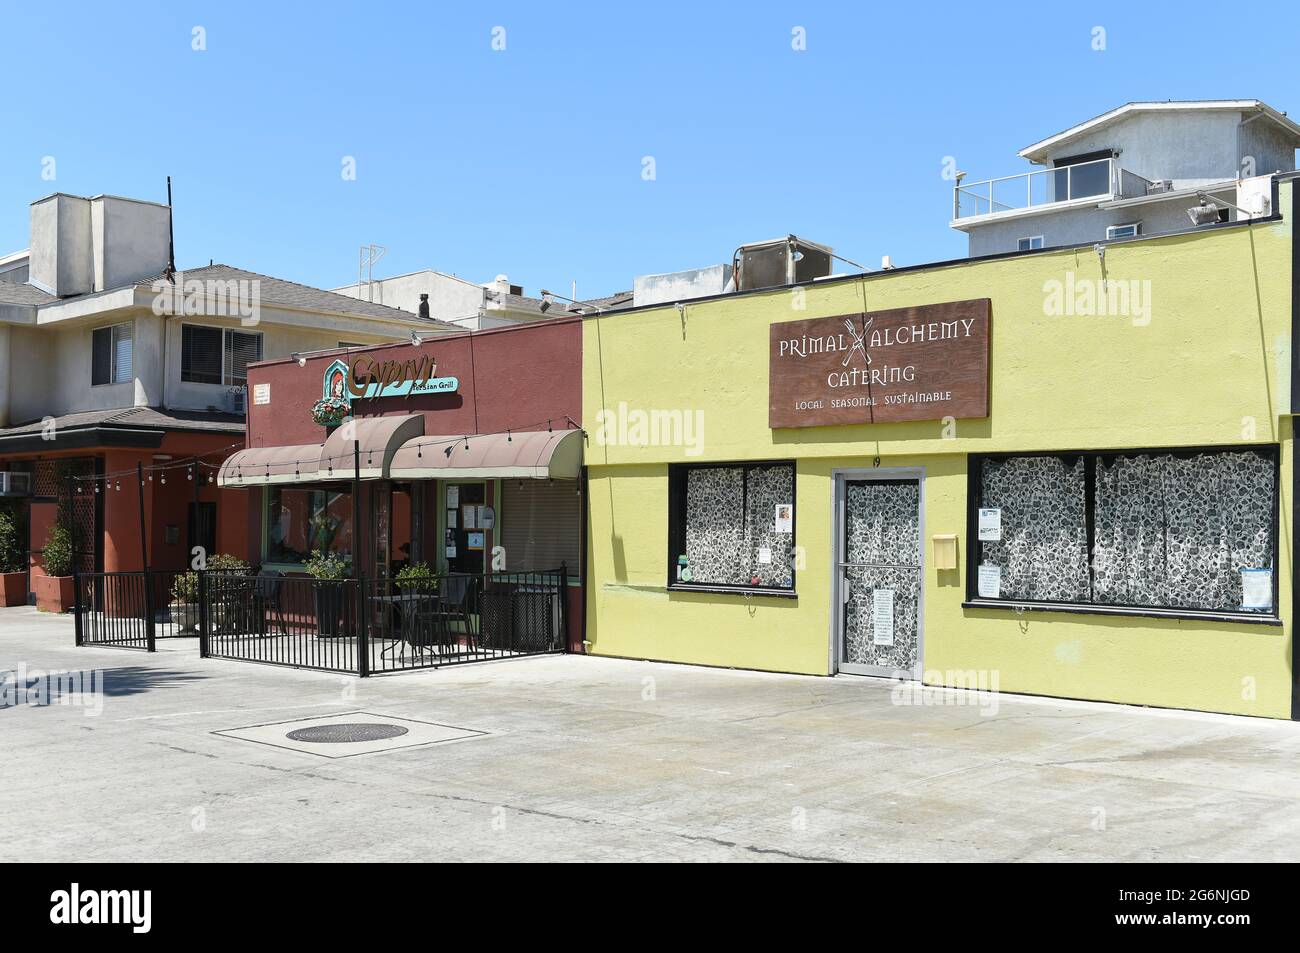 LONG BEACH, KALIFORNIEN - 5. JULI 2021: Die Cyprus Persian Grill und Primal Alchemy Catering Restaurants in der Belmont Shores Nachbarschaft. Stockfoto